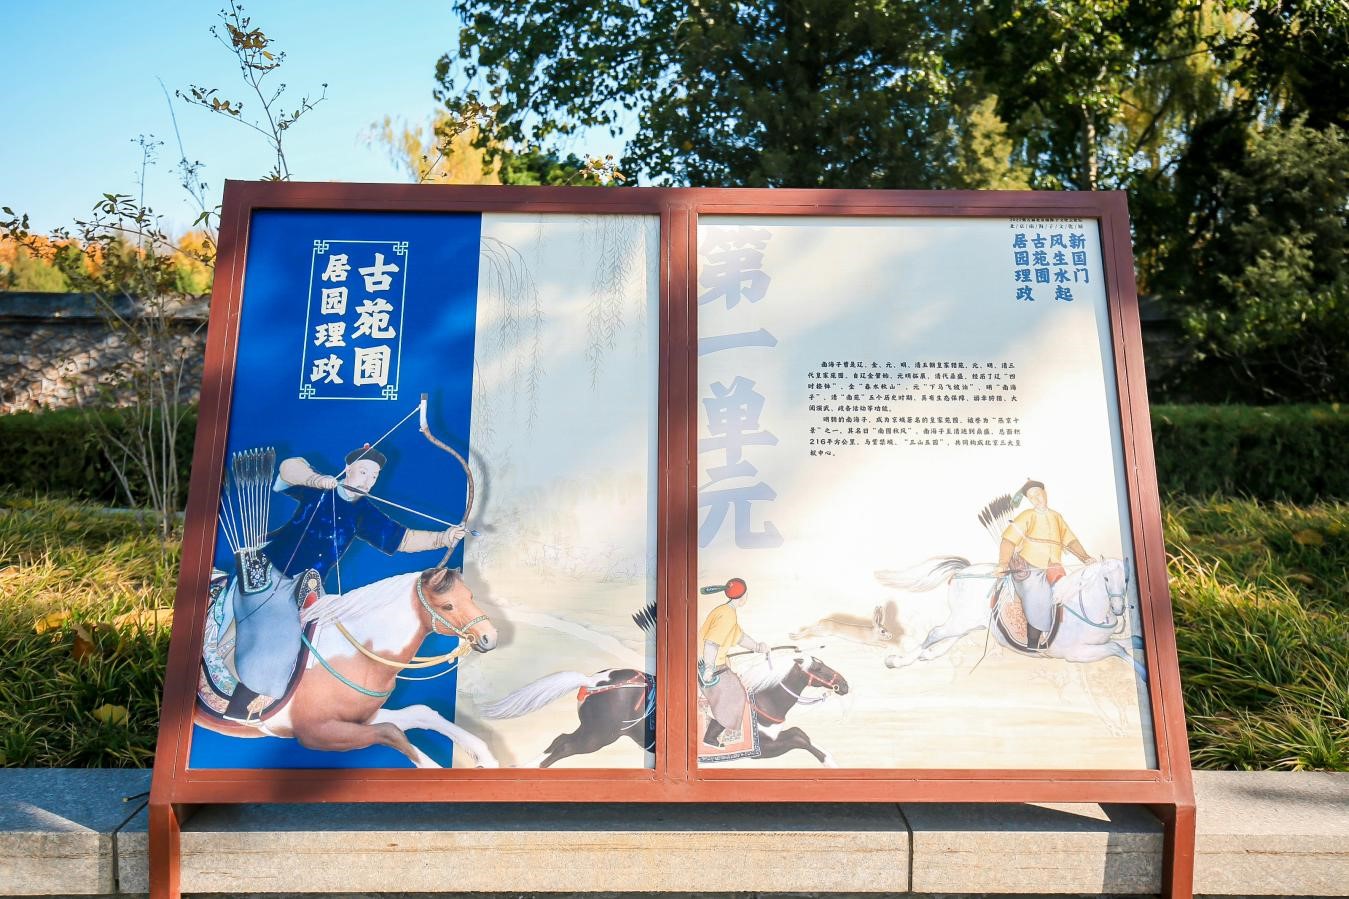 北京南海子文化展颐和园开幕 再现皇家园林的前世今生.jpg